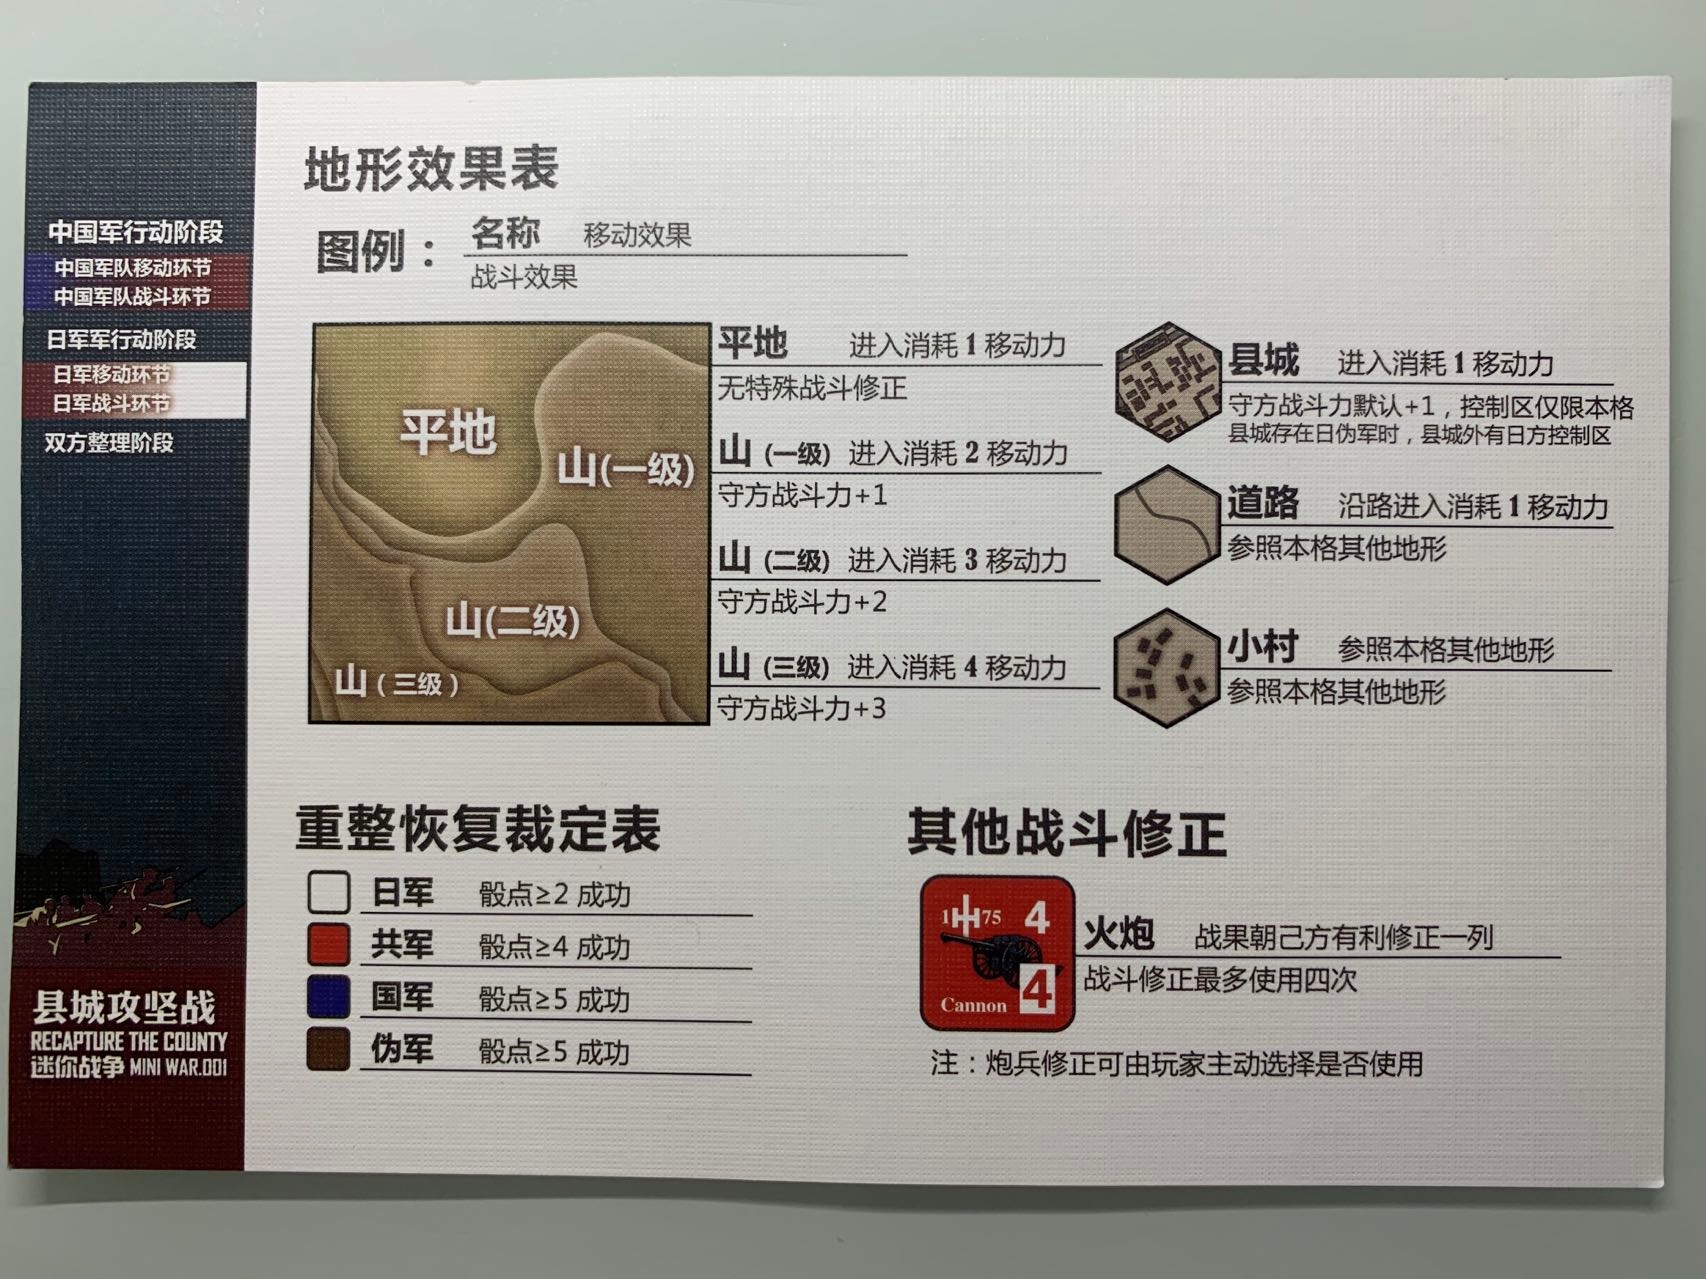 參照玩家提示卡中上方的地形效果表，縣城中涉及的控制區概念下文馬上就會提及